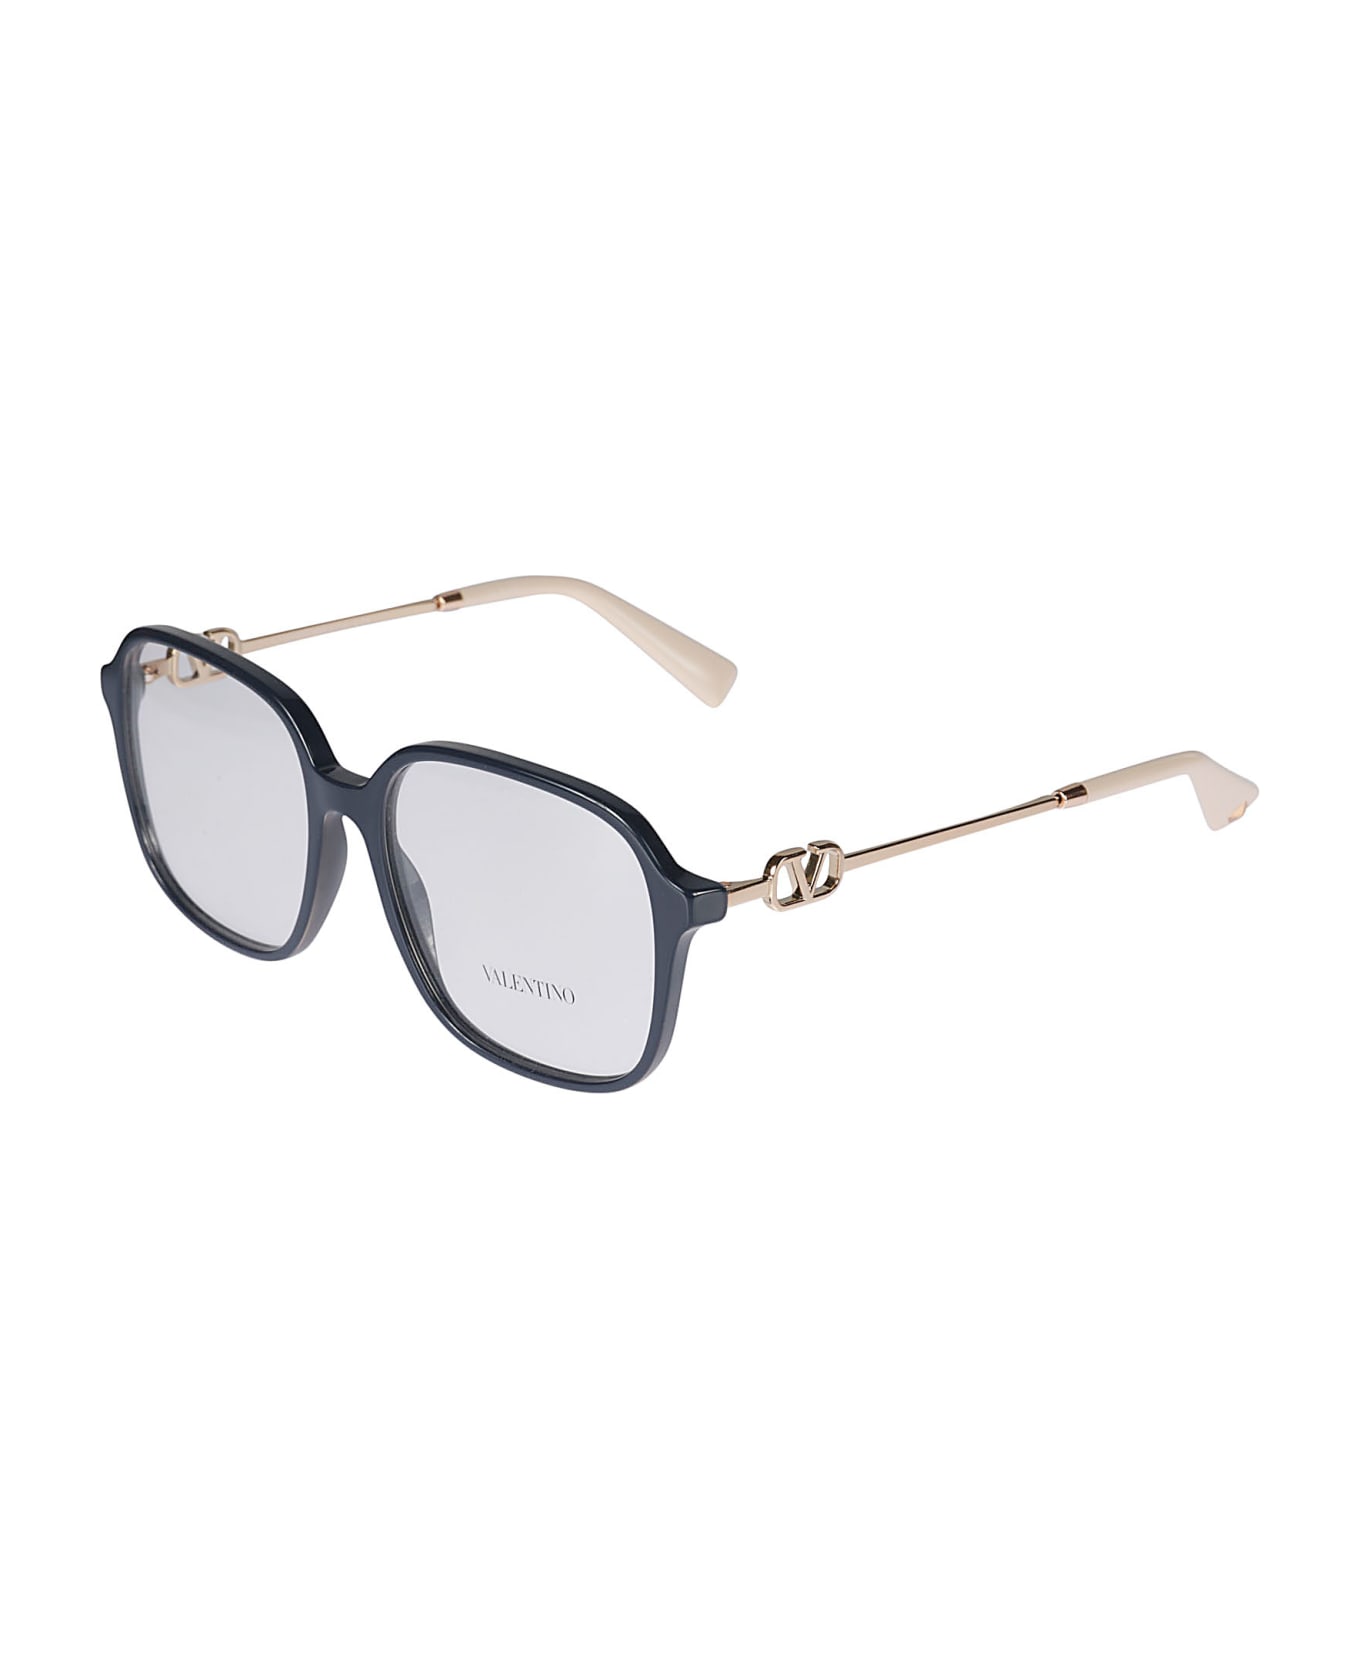 Valentino Eyewear Vista5034 Glasses - 5034 アイウェア